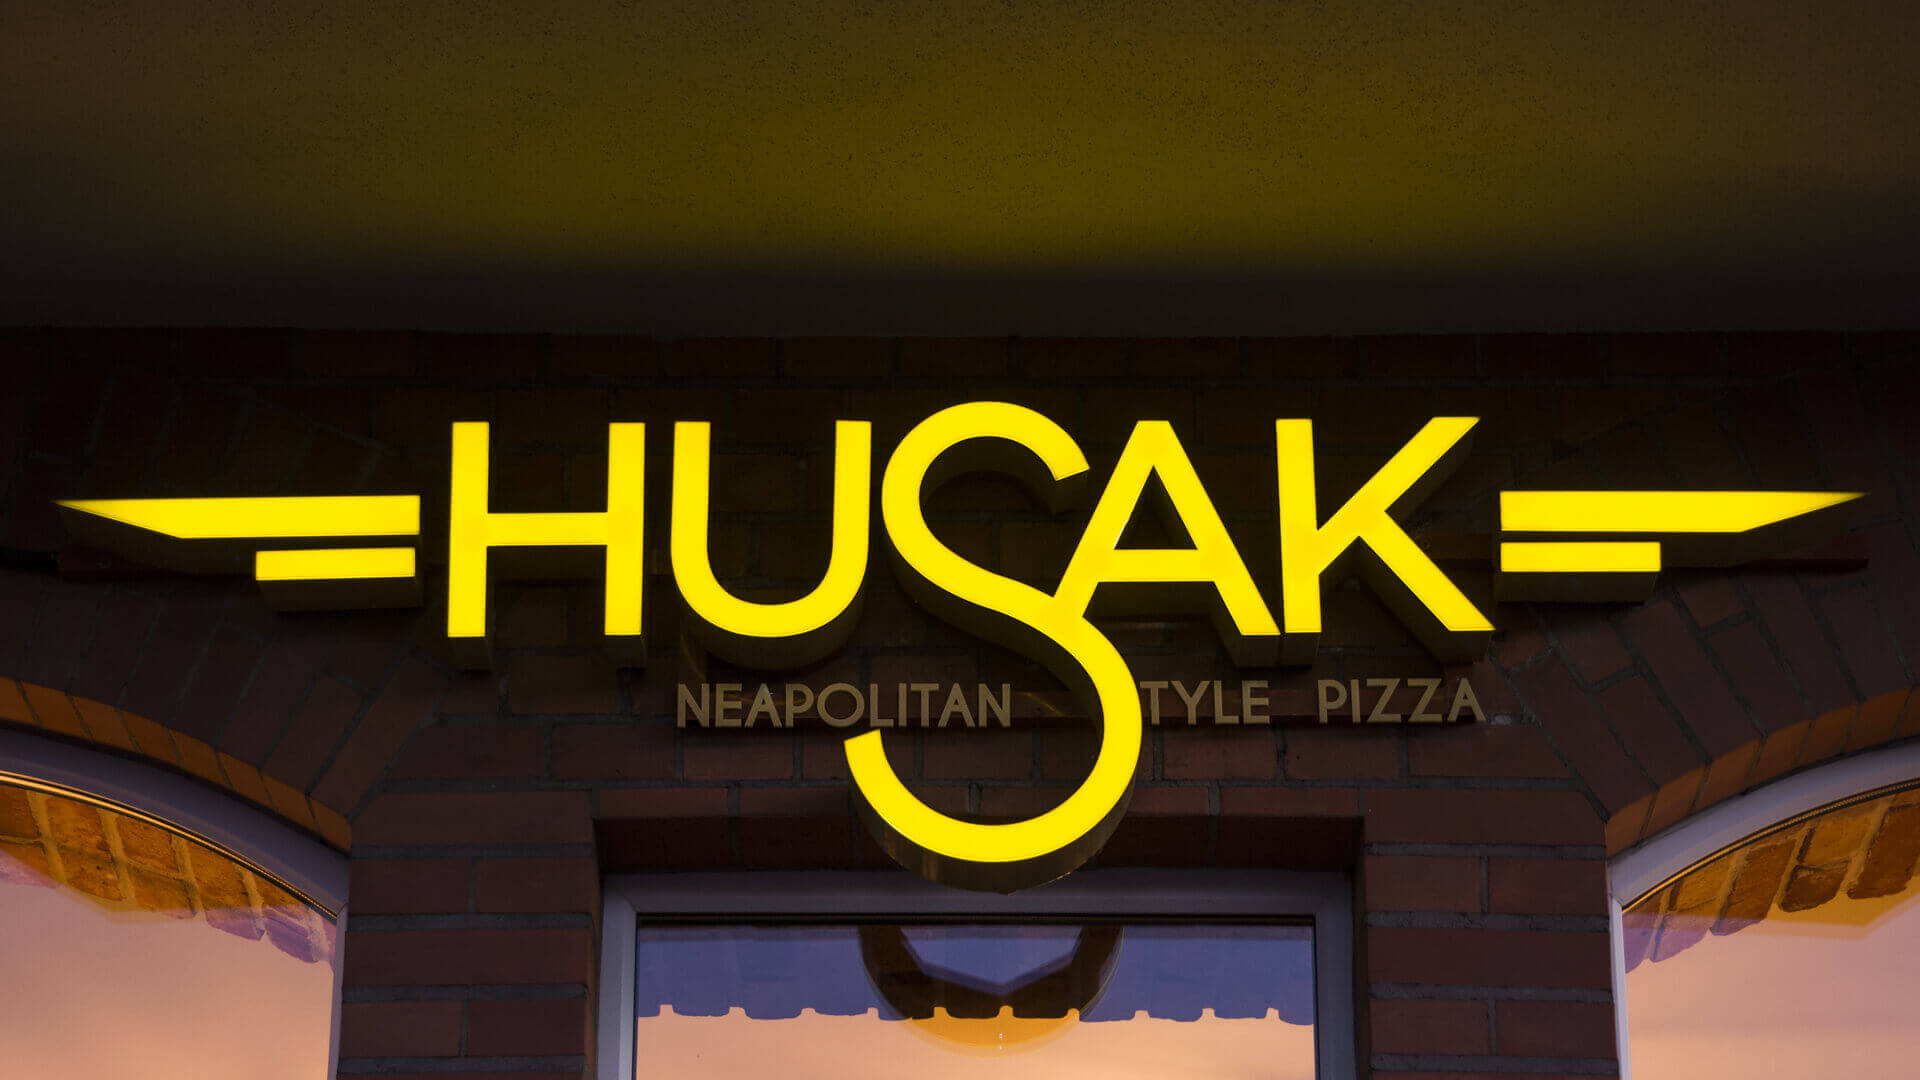 pizzeria husak  - hussak-pizzeria-zlote-literature-spatiale-illuminée-carreau-lettres-sur-le-mur-avec-cartouche-sur-le-mur-enseigne-montée-sur-le-mur-grunwaldzka-gdansk (14)